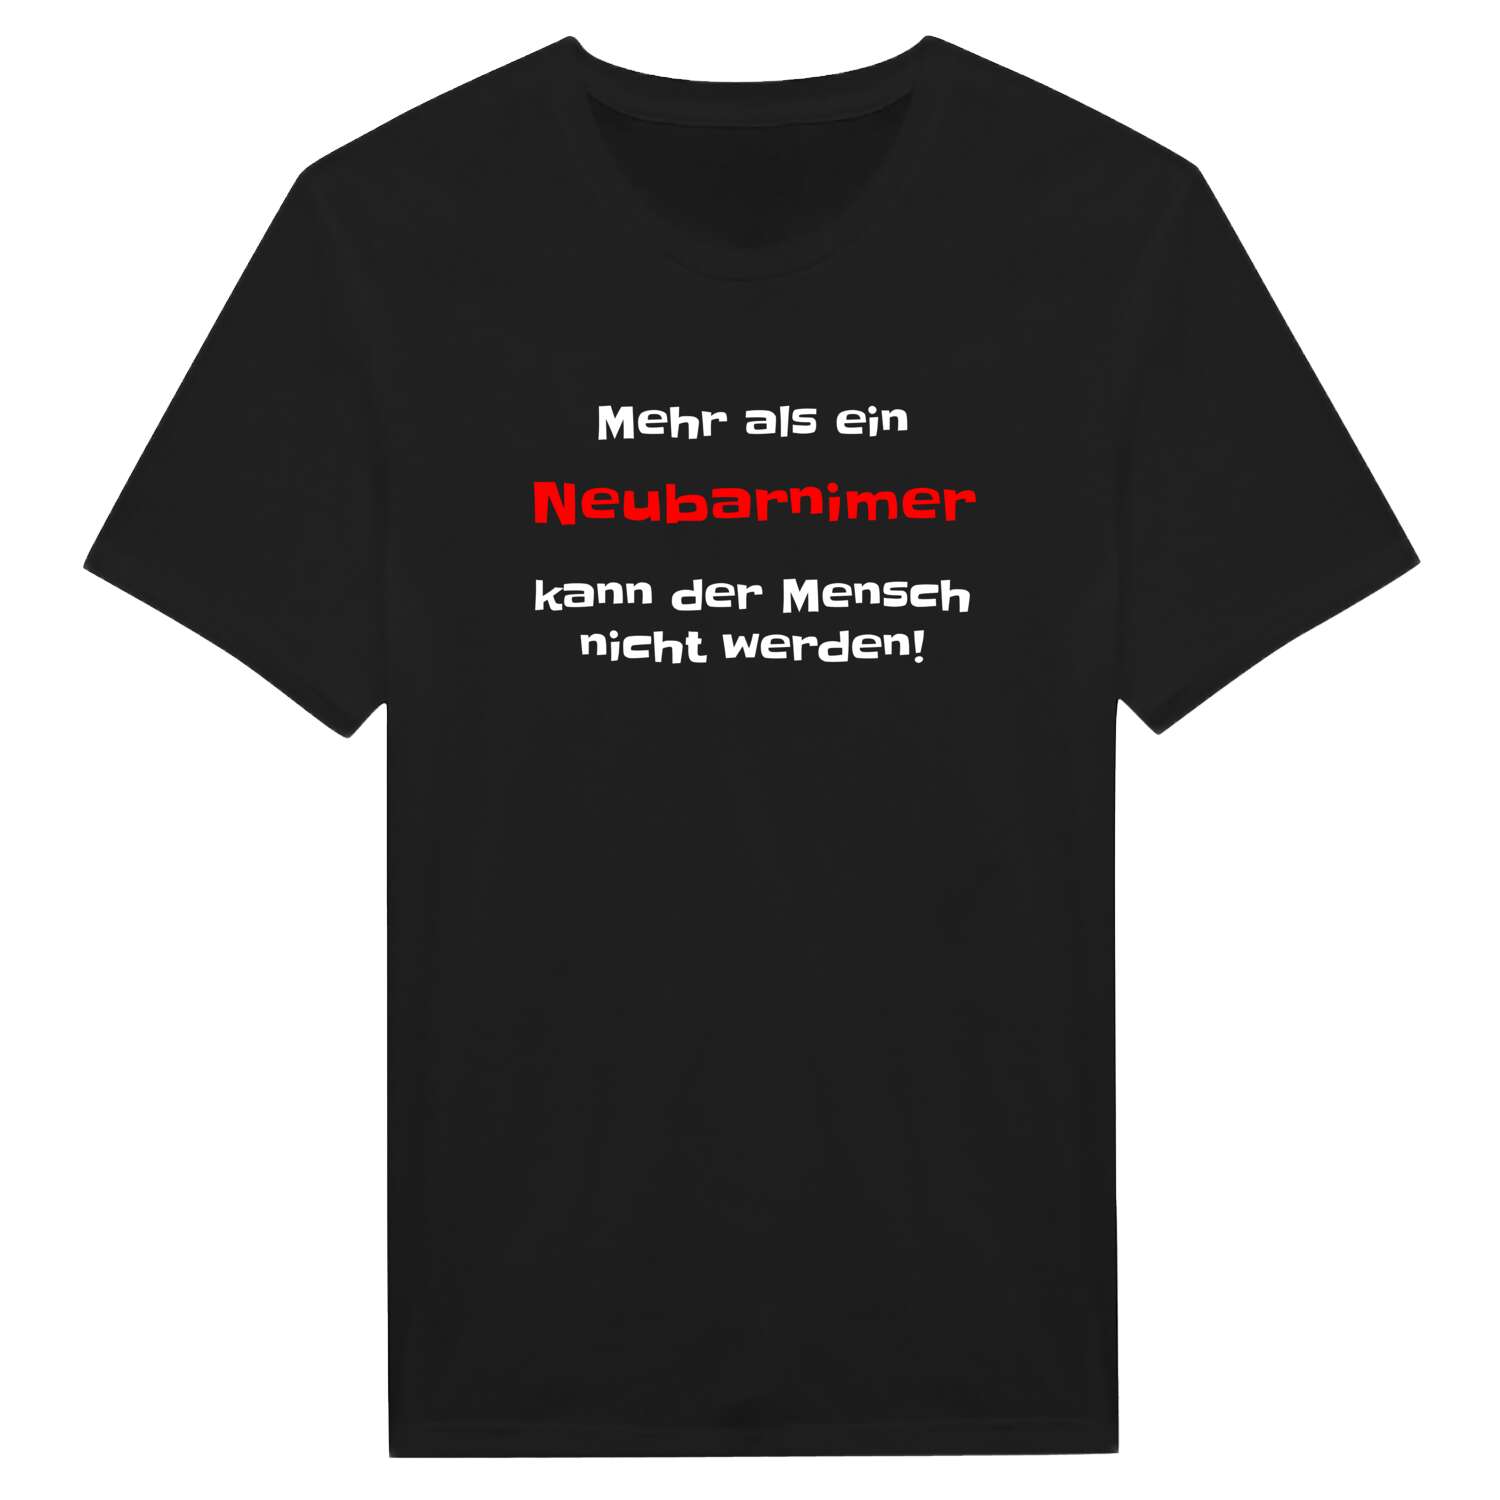 Neubarnim T-Shirt »Mehr als ein«